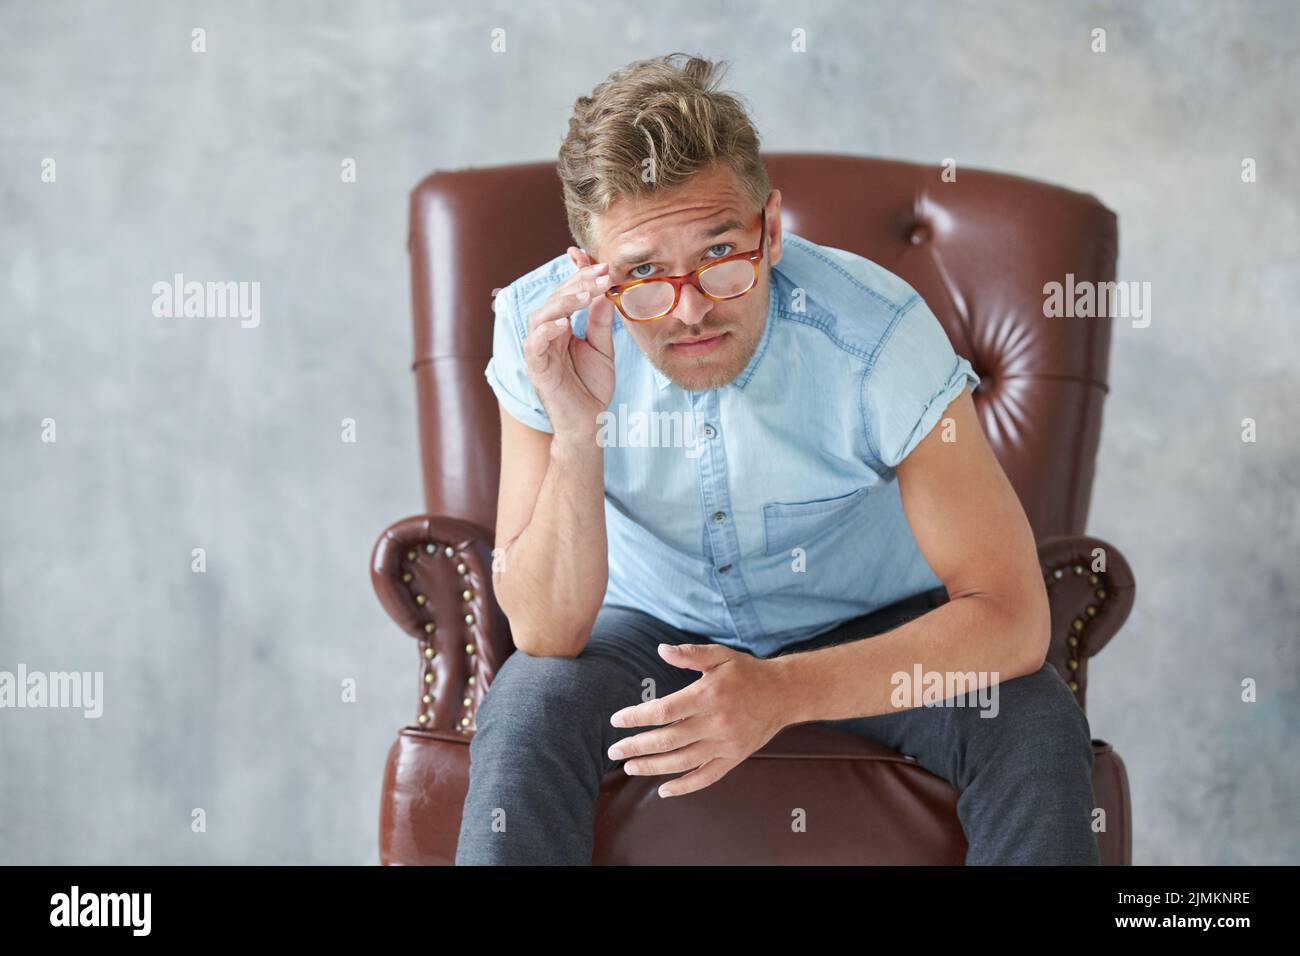 Portrait d'un homme intelligent élégant regarde dans l'appareil photo, petit, non rasé, charismatique chemise bleue, assis sur un brun leathe Banque D'Images